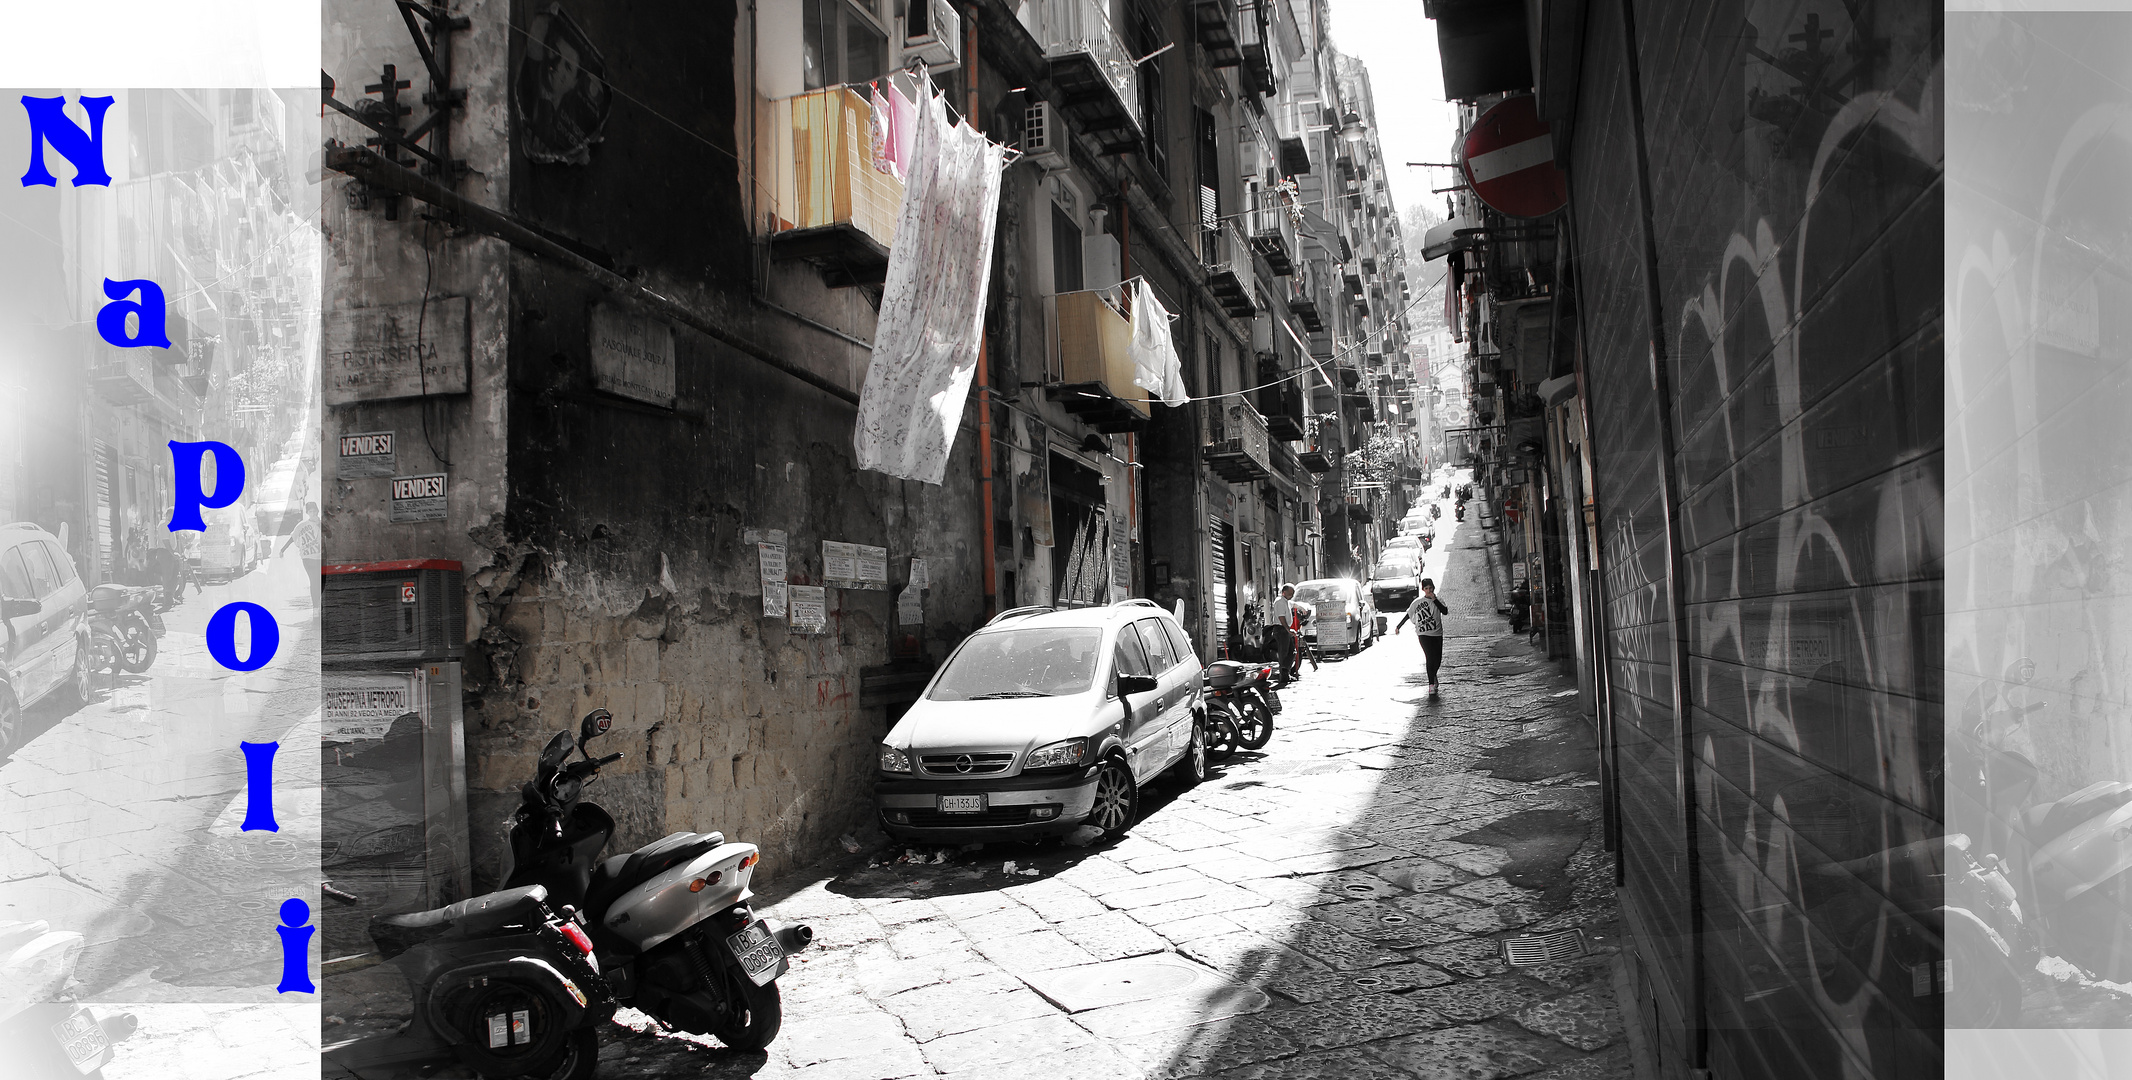 Eine der schönsten Straßen des historischen Zentrums von Neapel.